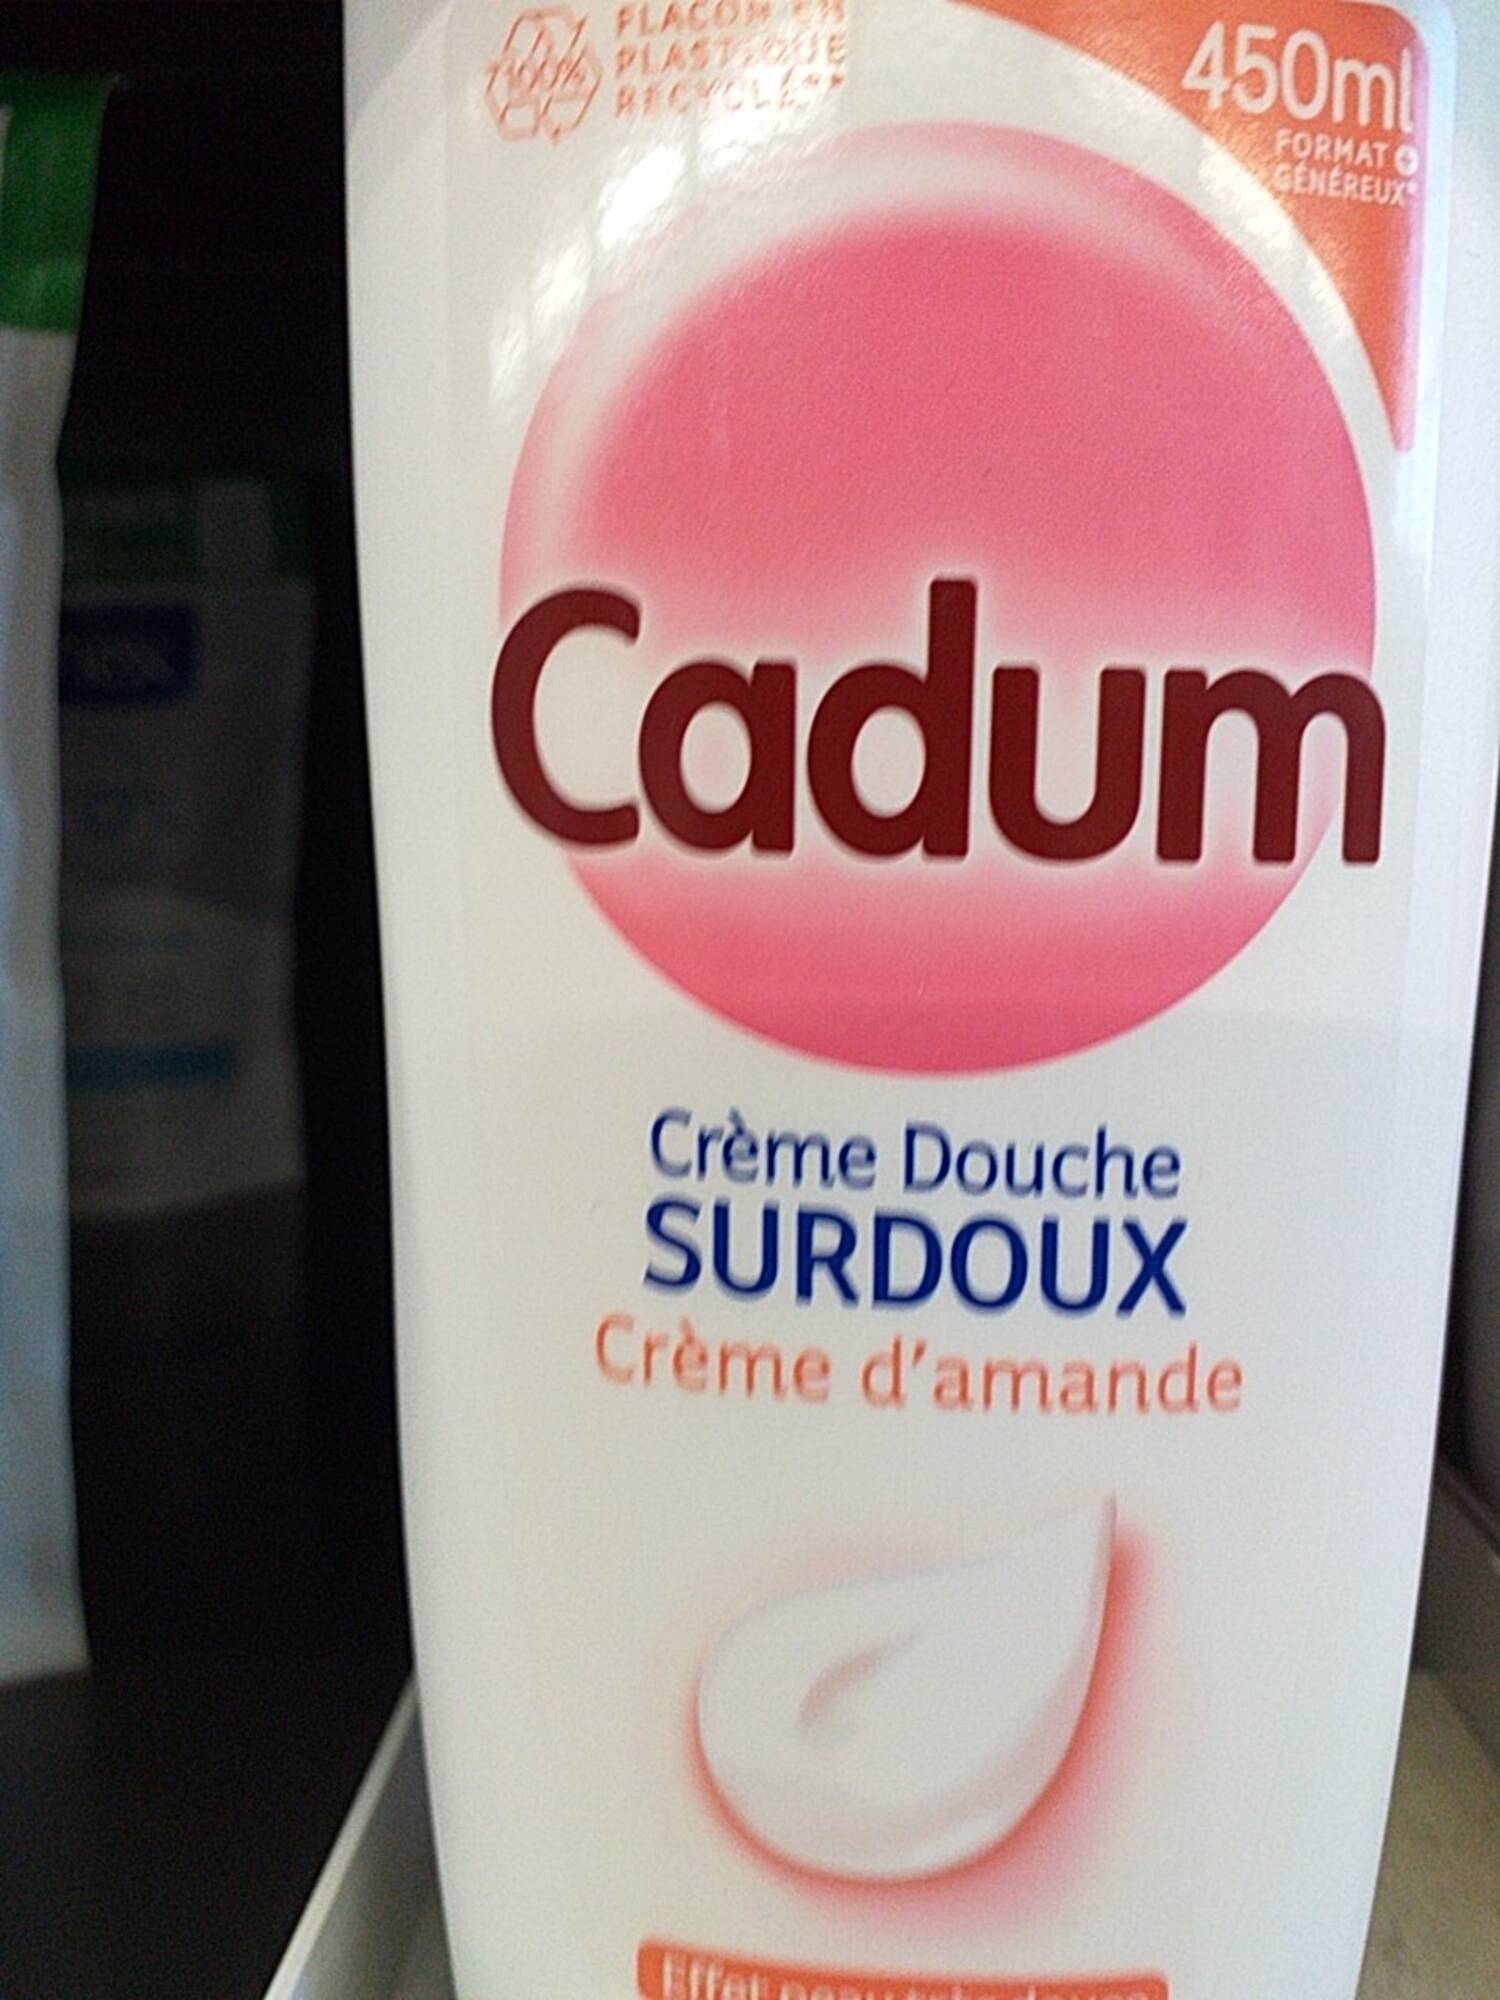 CADUM - Surdoux - Crème douche 